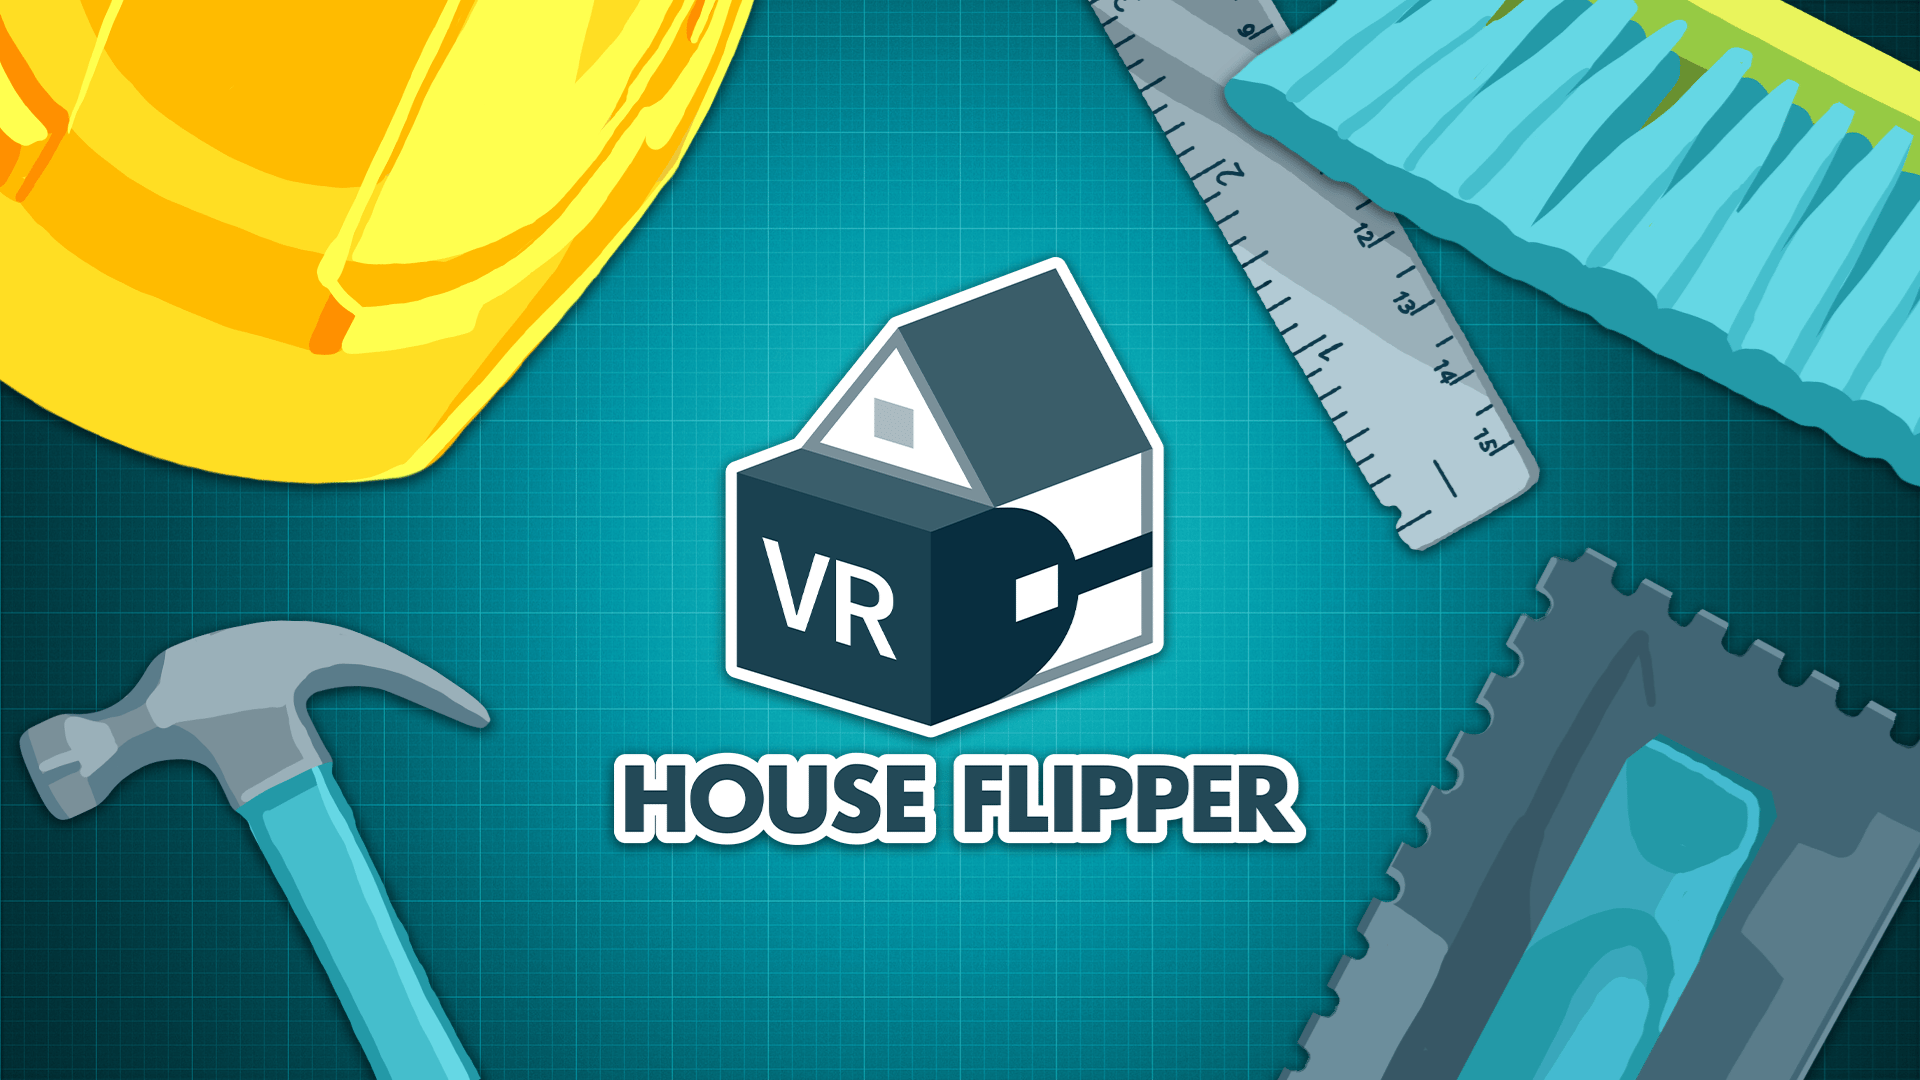 House Flipper VR | LATAM (f040740d-c0f6-4396-ac3f-a5f3608999af)